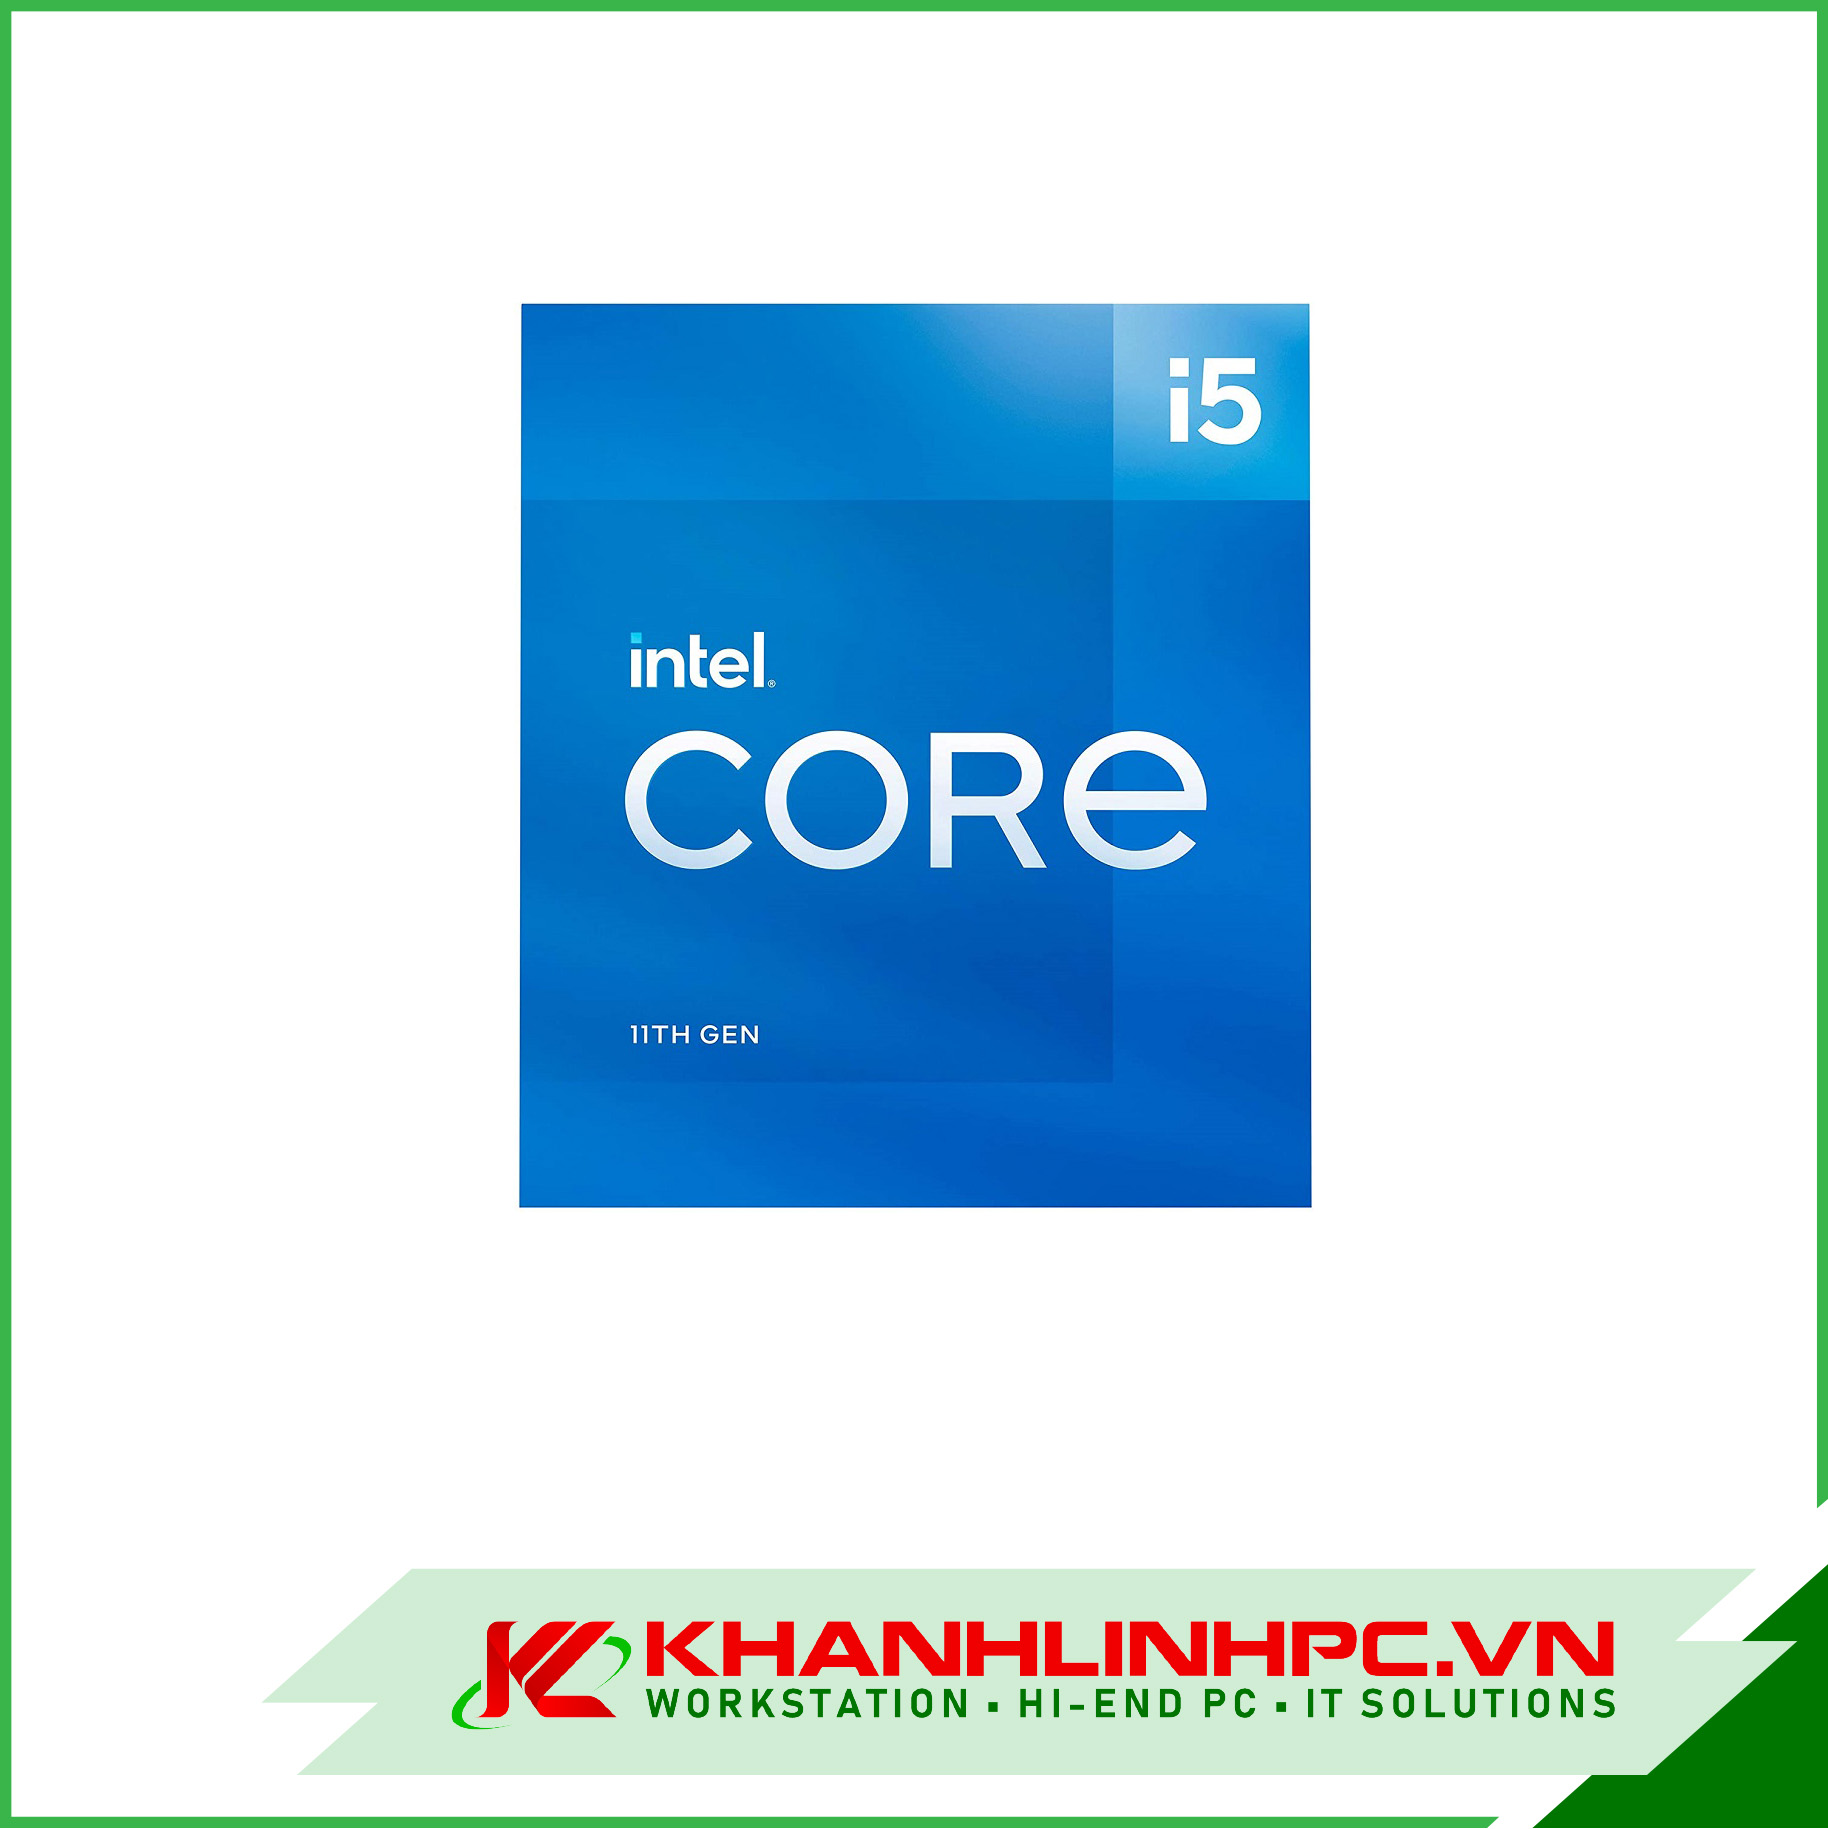 cpu intel core i5-11400 (2.6ghz turbo up to 4.4ghz, 6 nhân 12 luồng, 12mb cache, 65w) - socket intel lga 1200